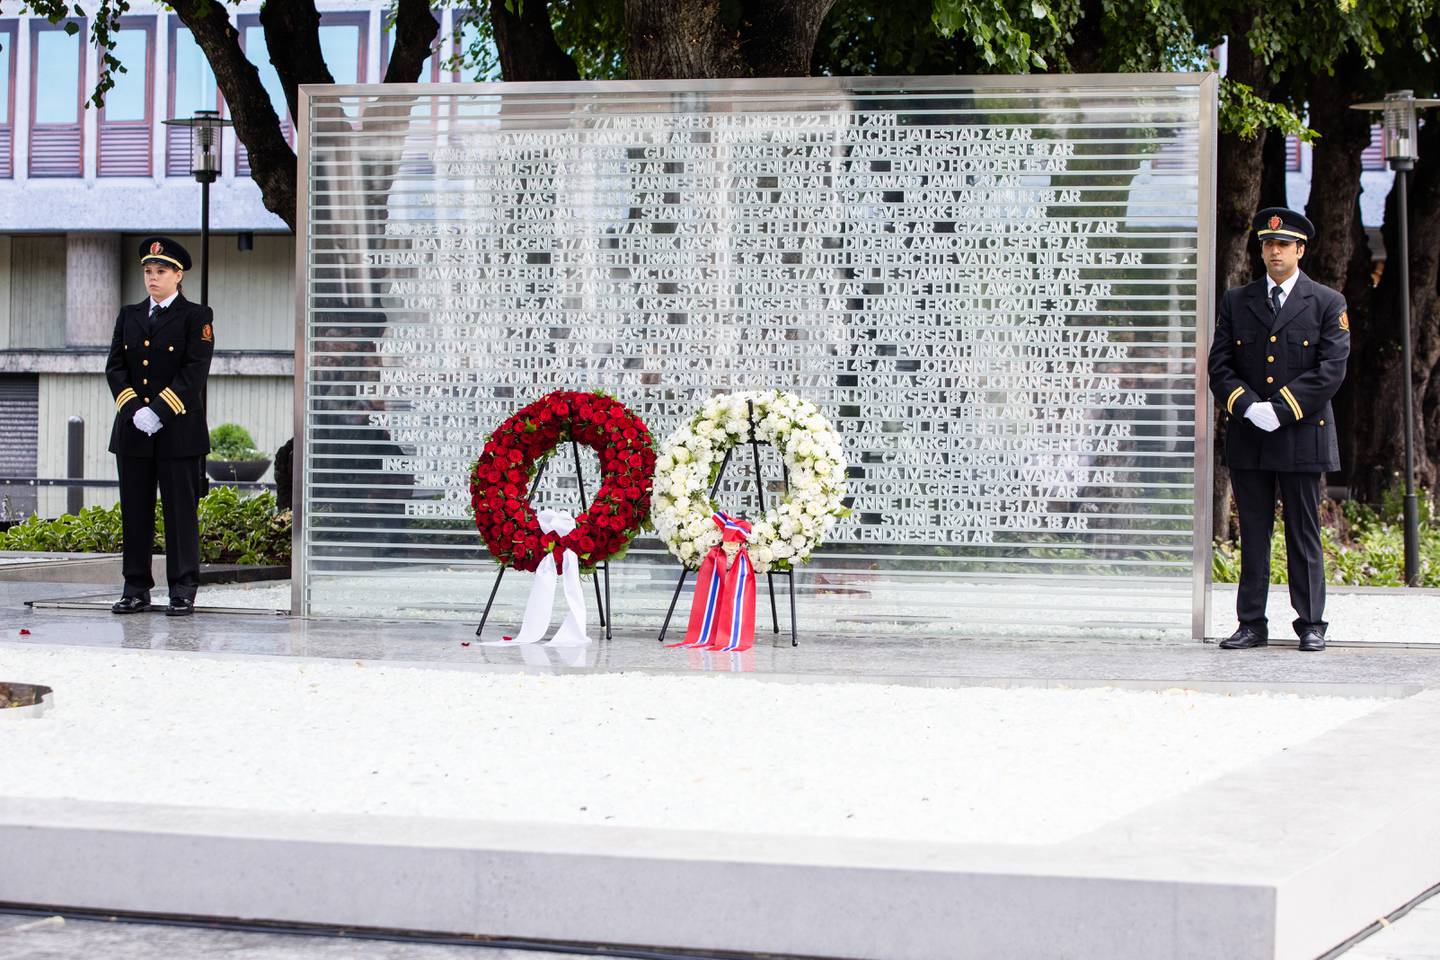 Et midlertidige minnesmerket ble satt opp i Regjeringskvartalet i 2018. Navn og alder på hvert av ofrene står skrevet på minnesmerket.